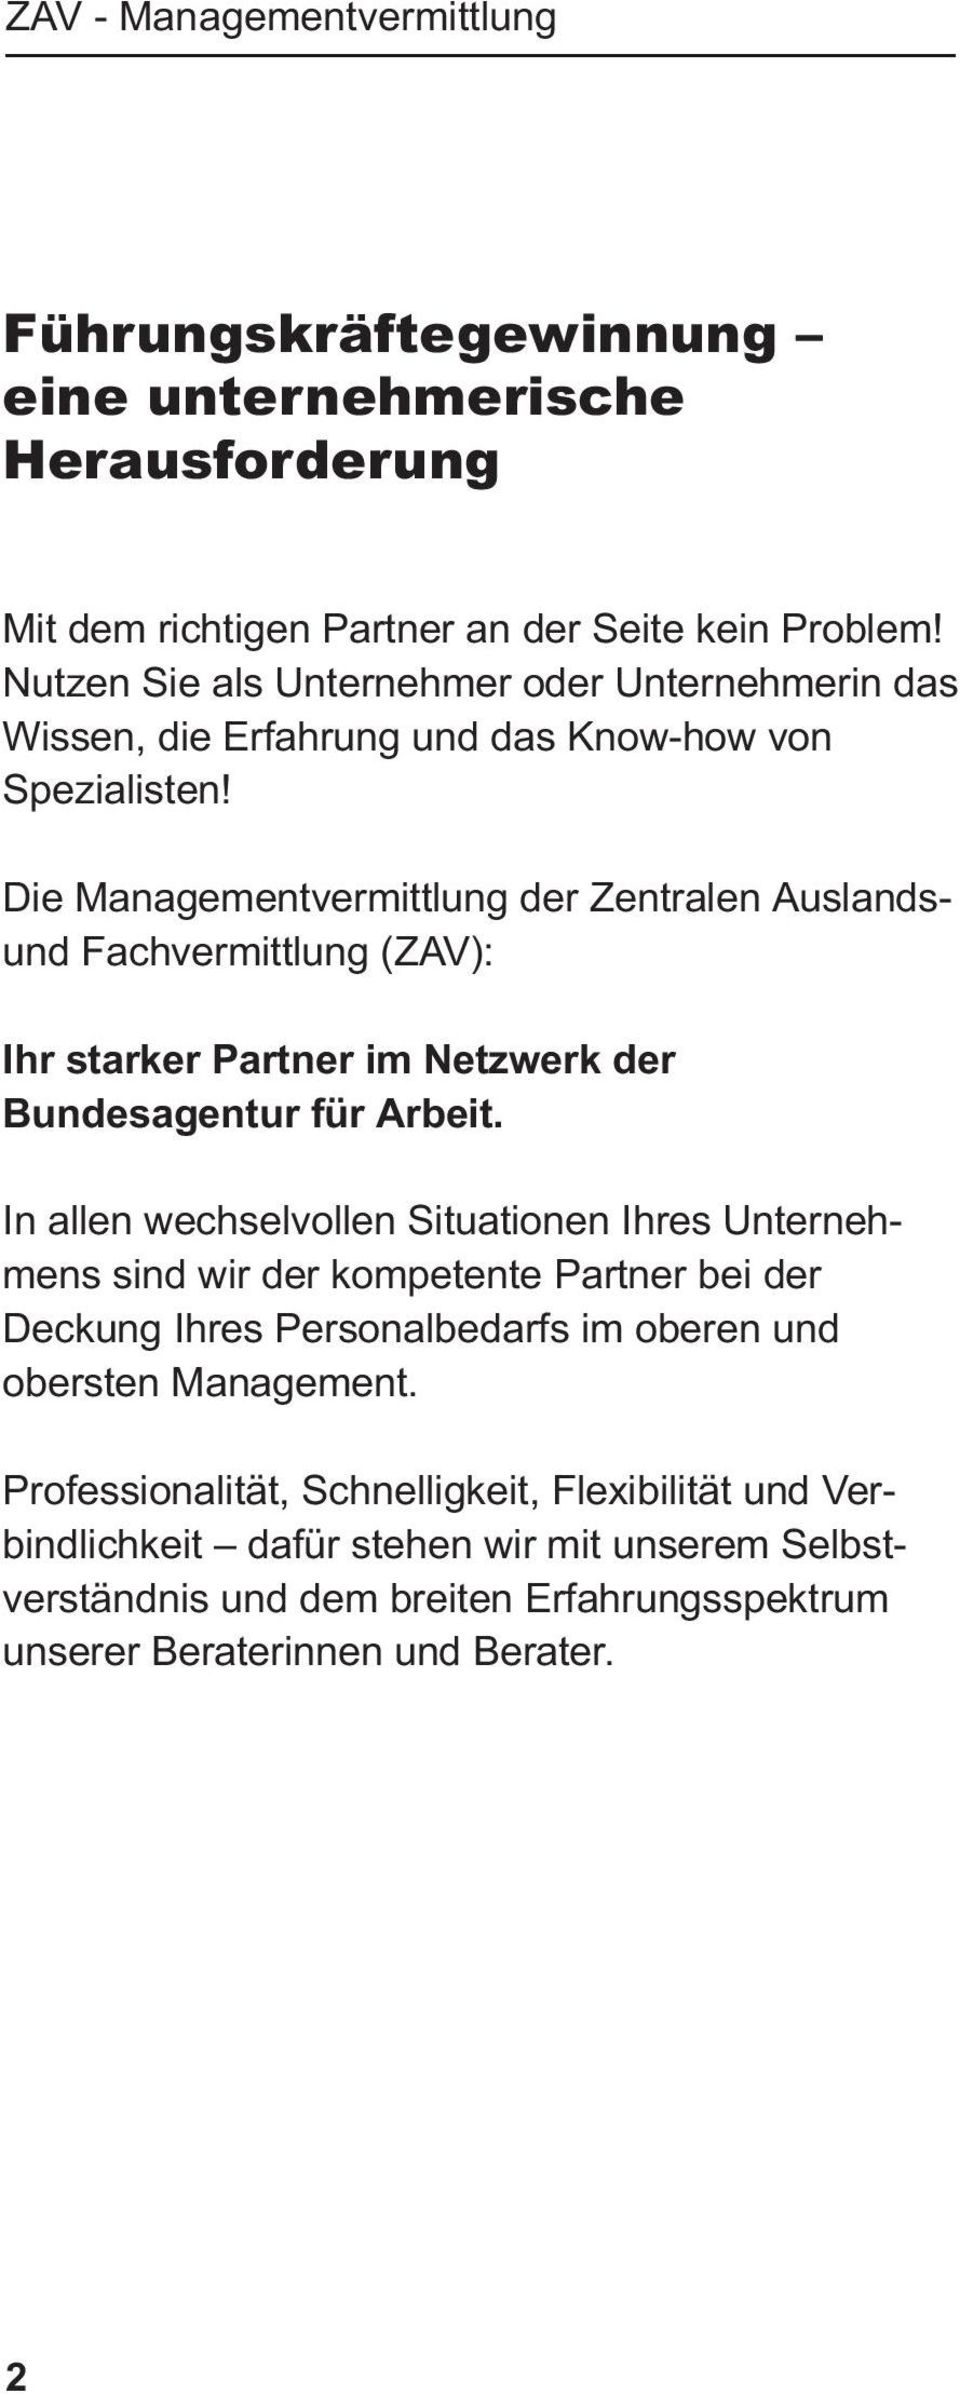 Die Managementvermittlung der Zentralen Auslandsund Fachvermittlung (ZAV): Ihr starker Partner im Netzwerk der Bundesagentur für Arbeit.